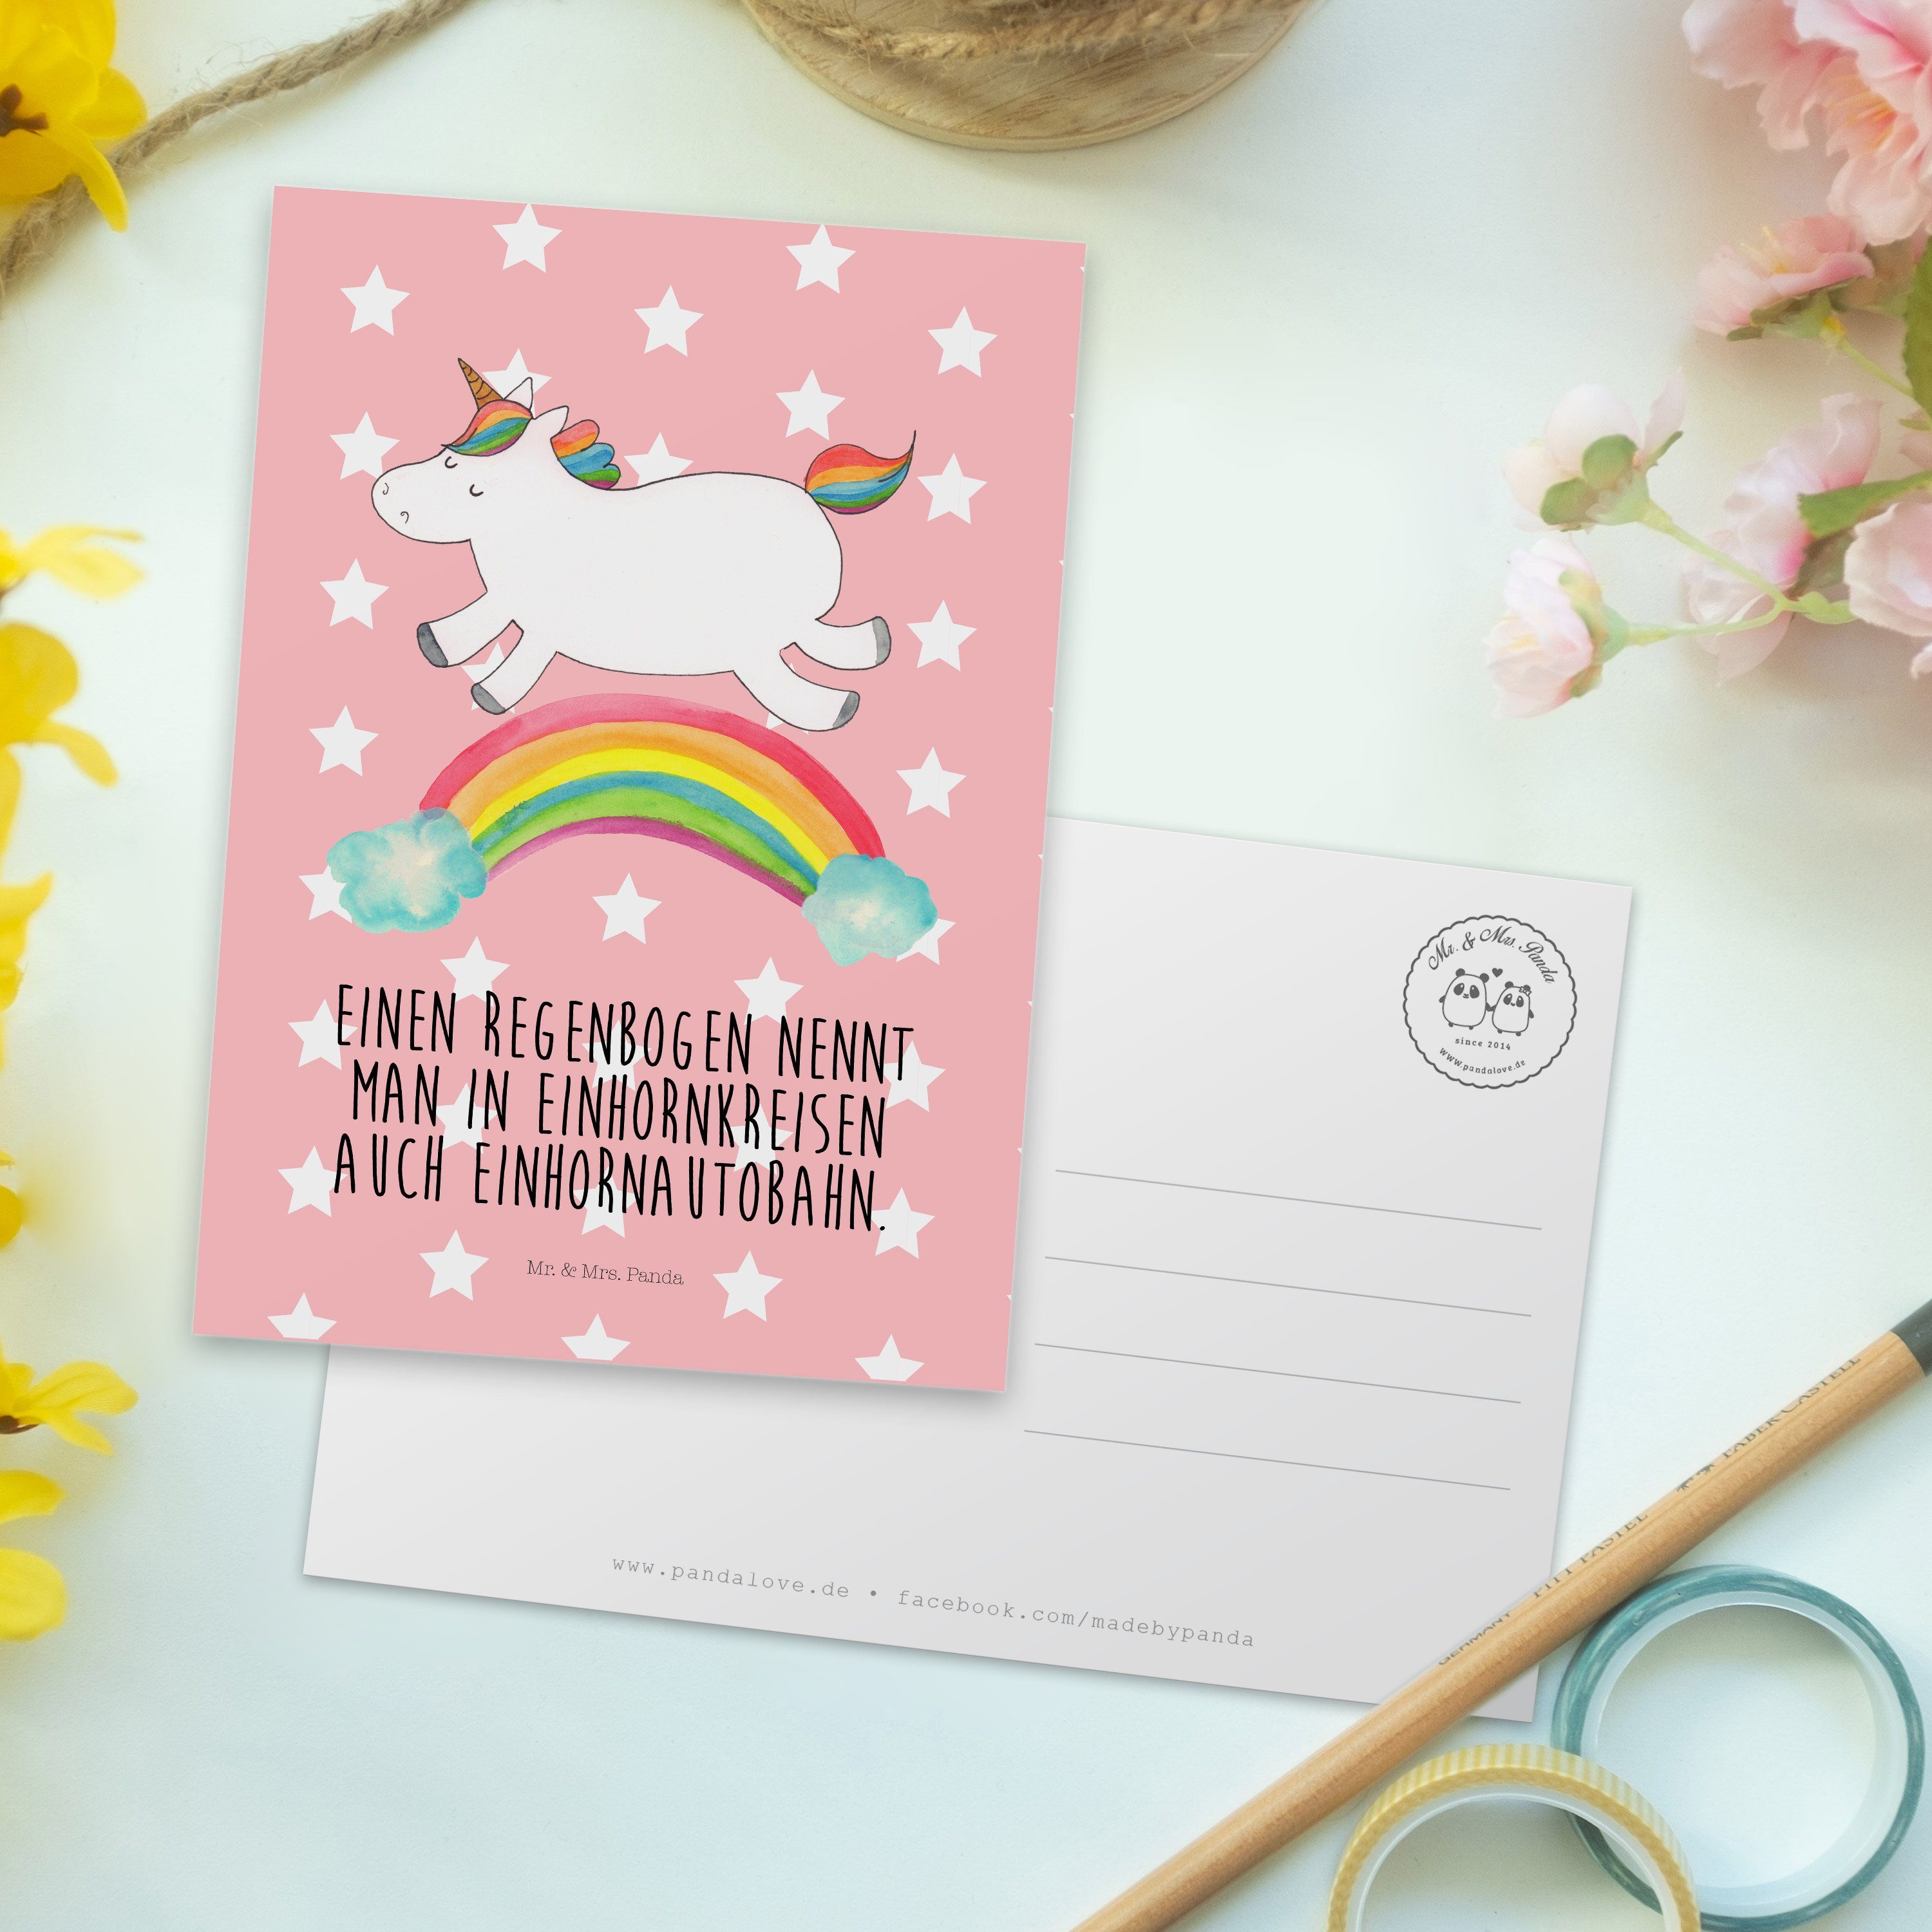 Pastell Rot Geschenk, Postkarte - Mr. & Einladung Mrs. Einhorn Panda Regenbogen Einhornpower, -